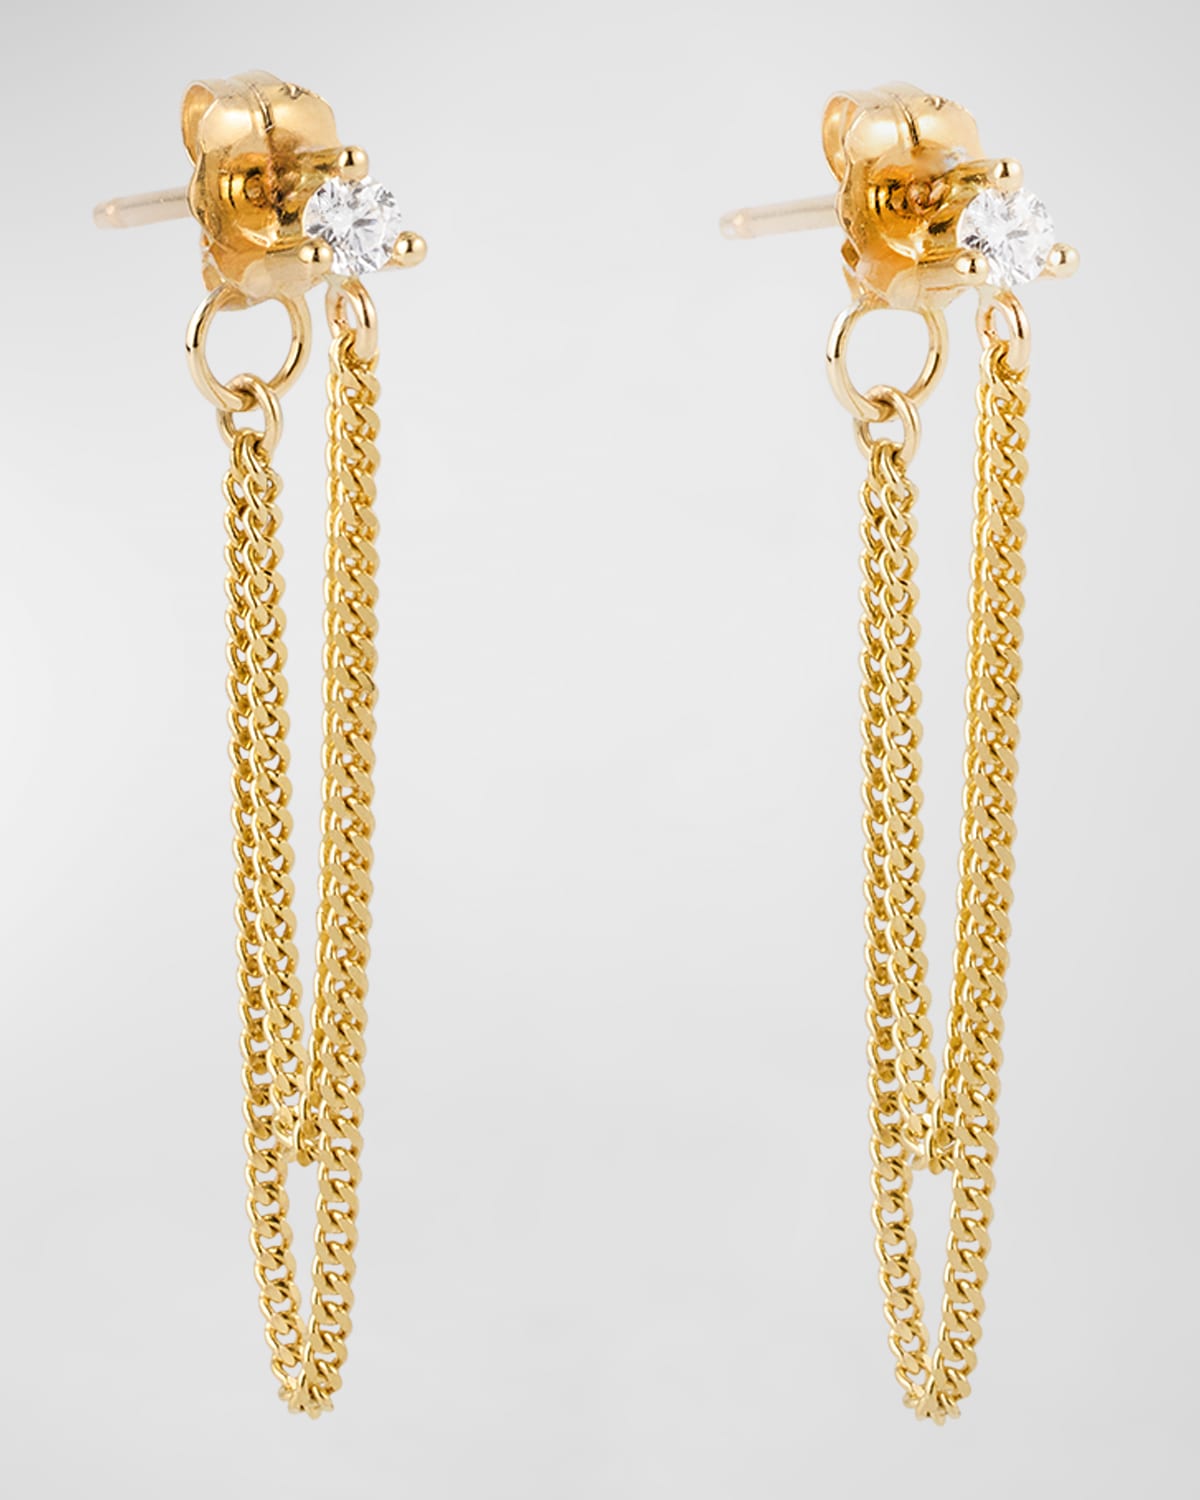 Poppy Finch Double-chain Wrap Around Diamond Earrings